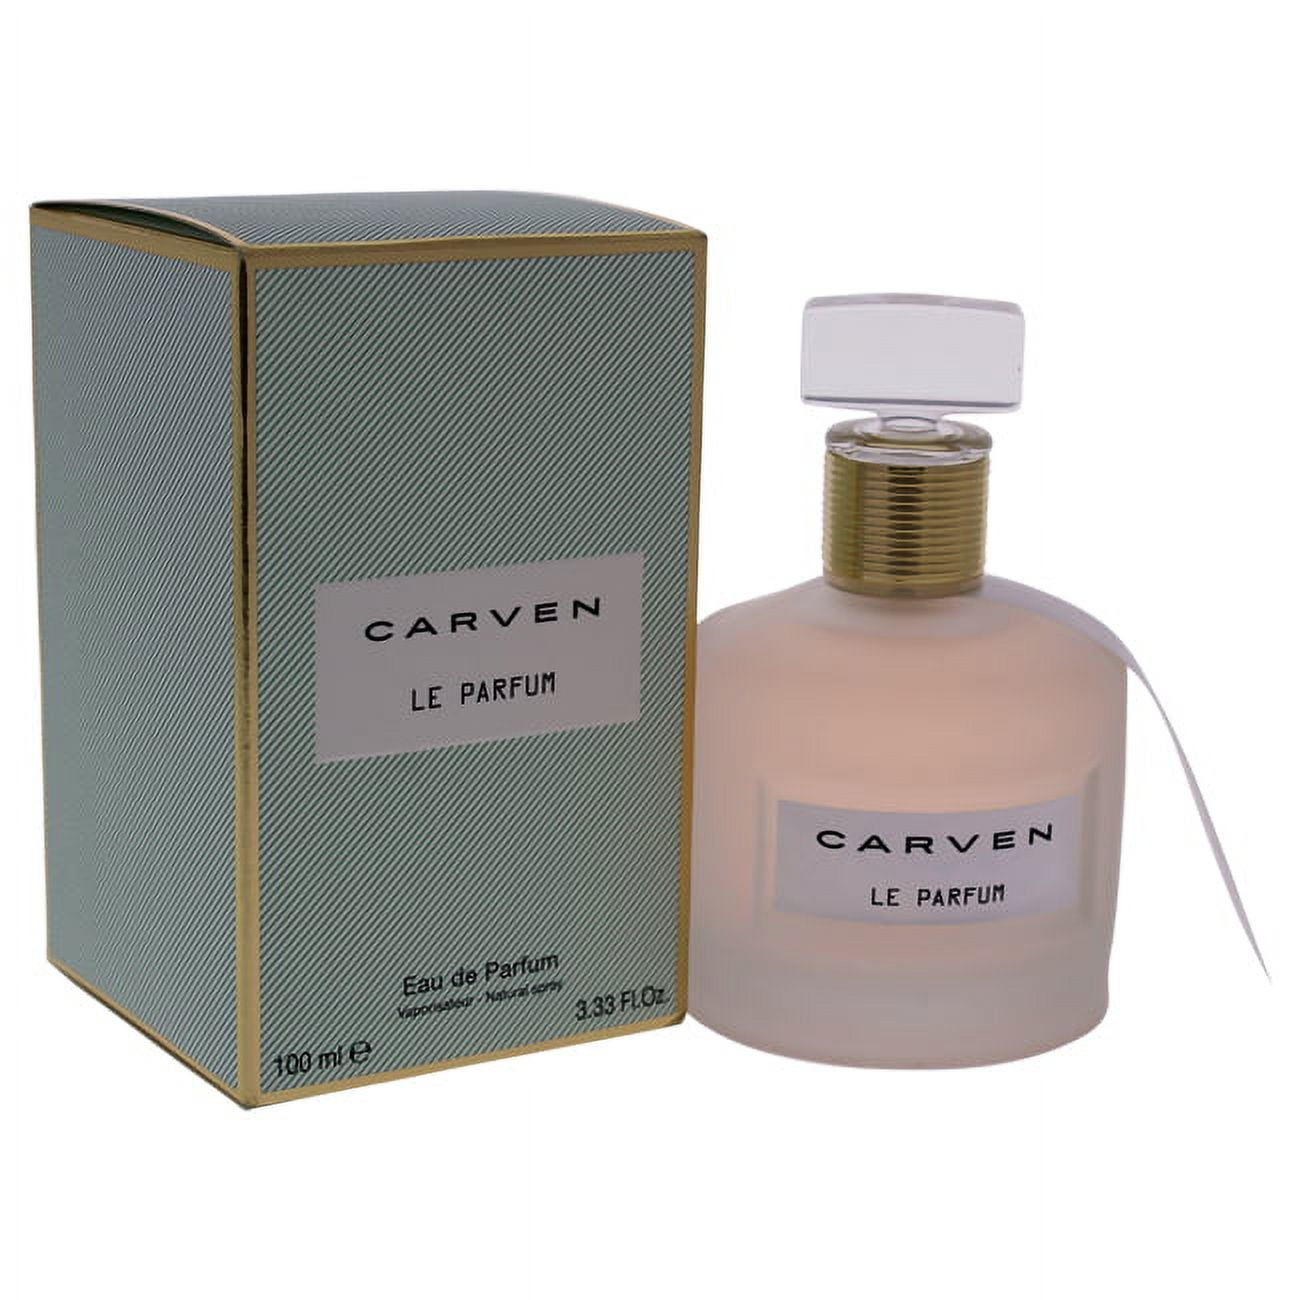 Carven Carven Le Parfum Eau de Parfum Spray For Women, 3.4 Oz - Walmart.com